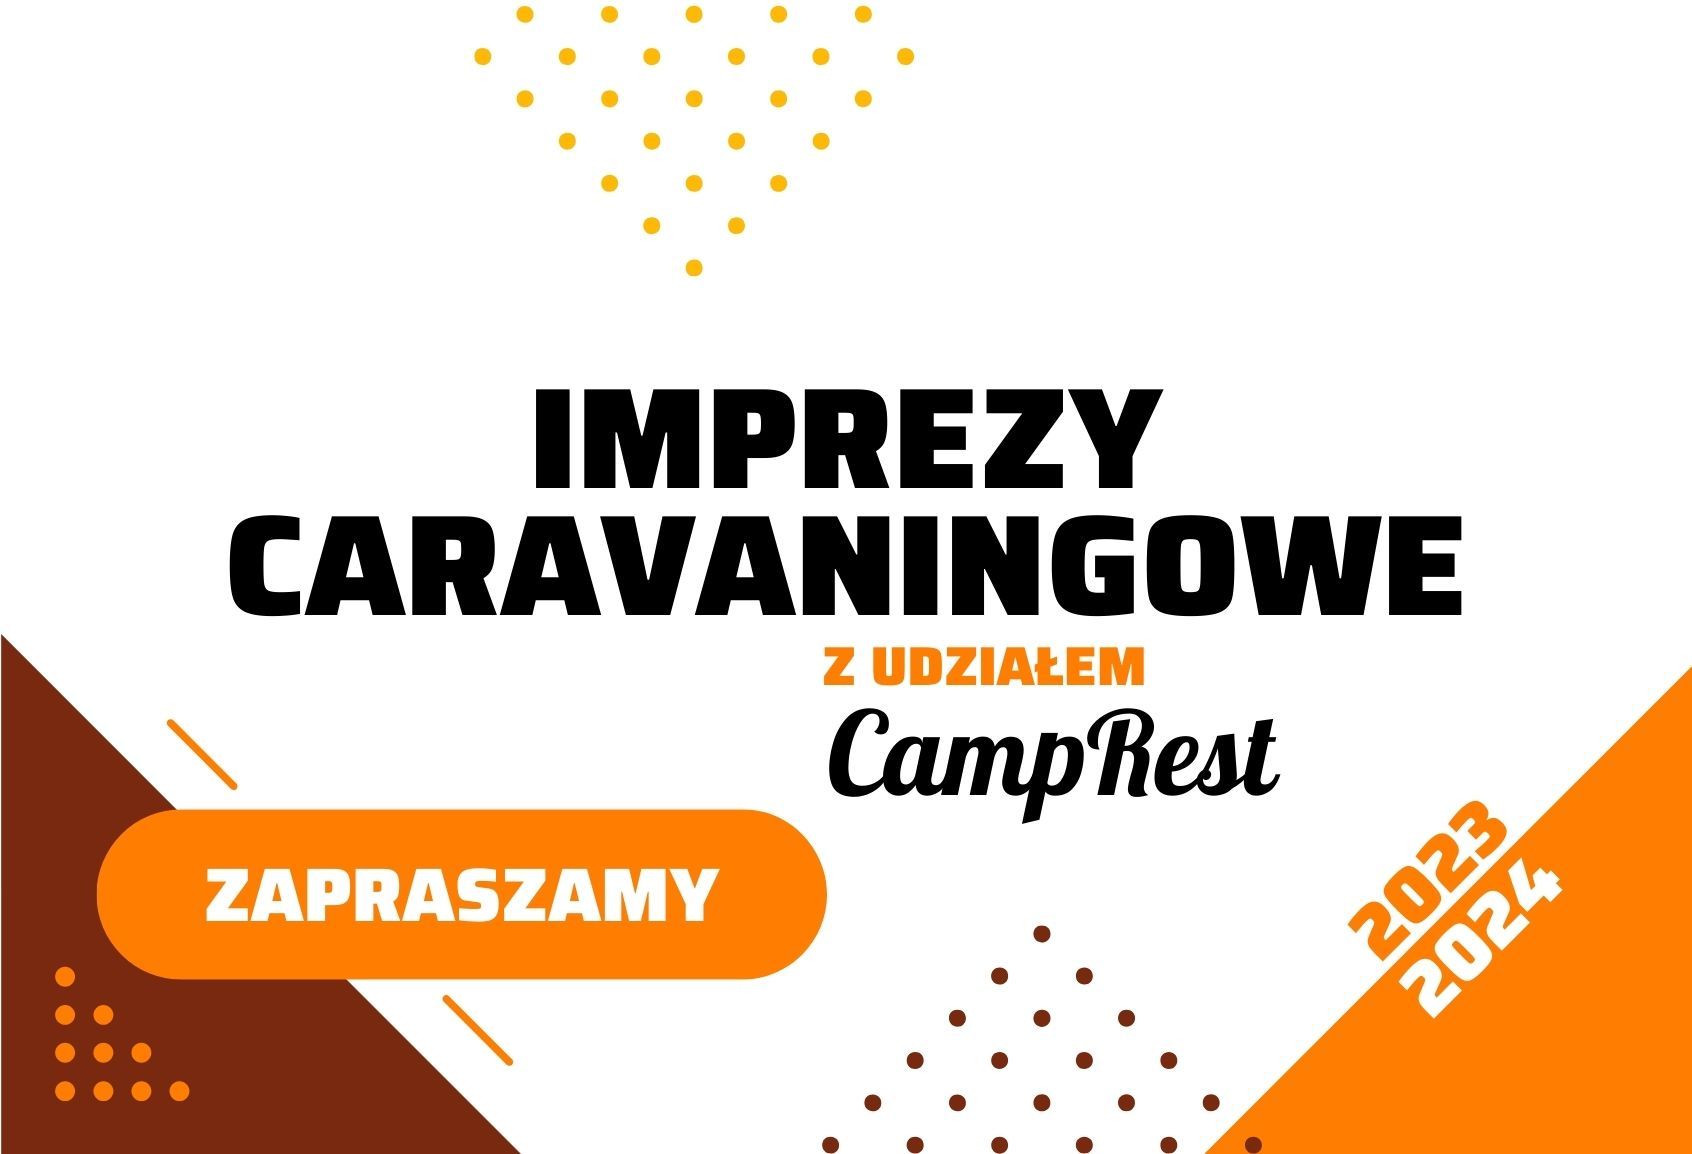 Imprezy caravaningowe z CampRest – główne zdjęcie